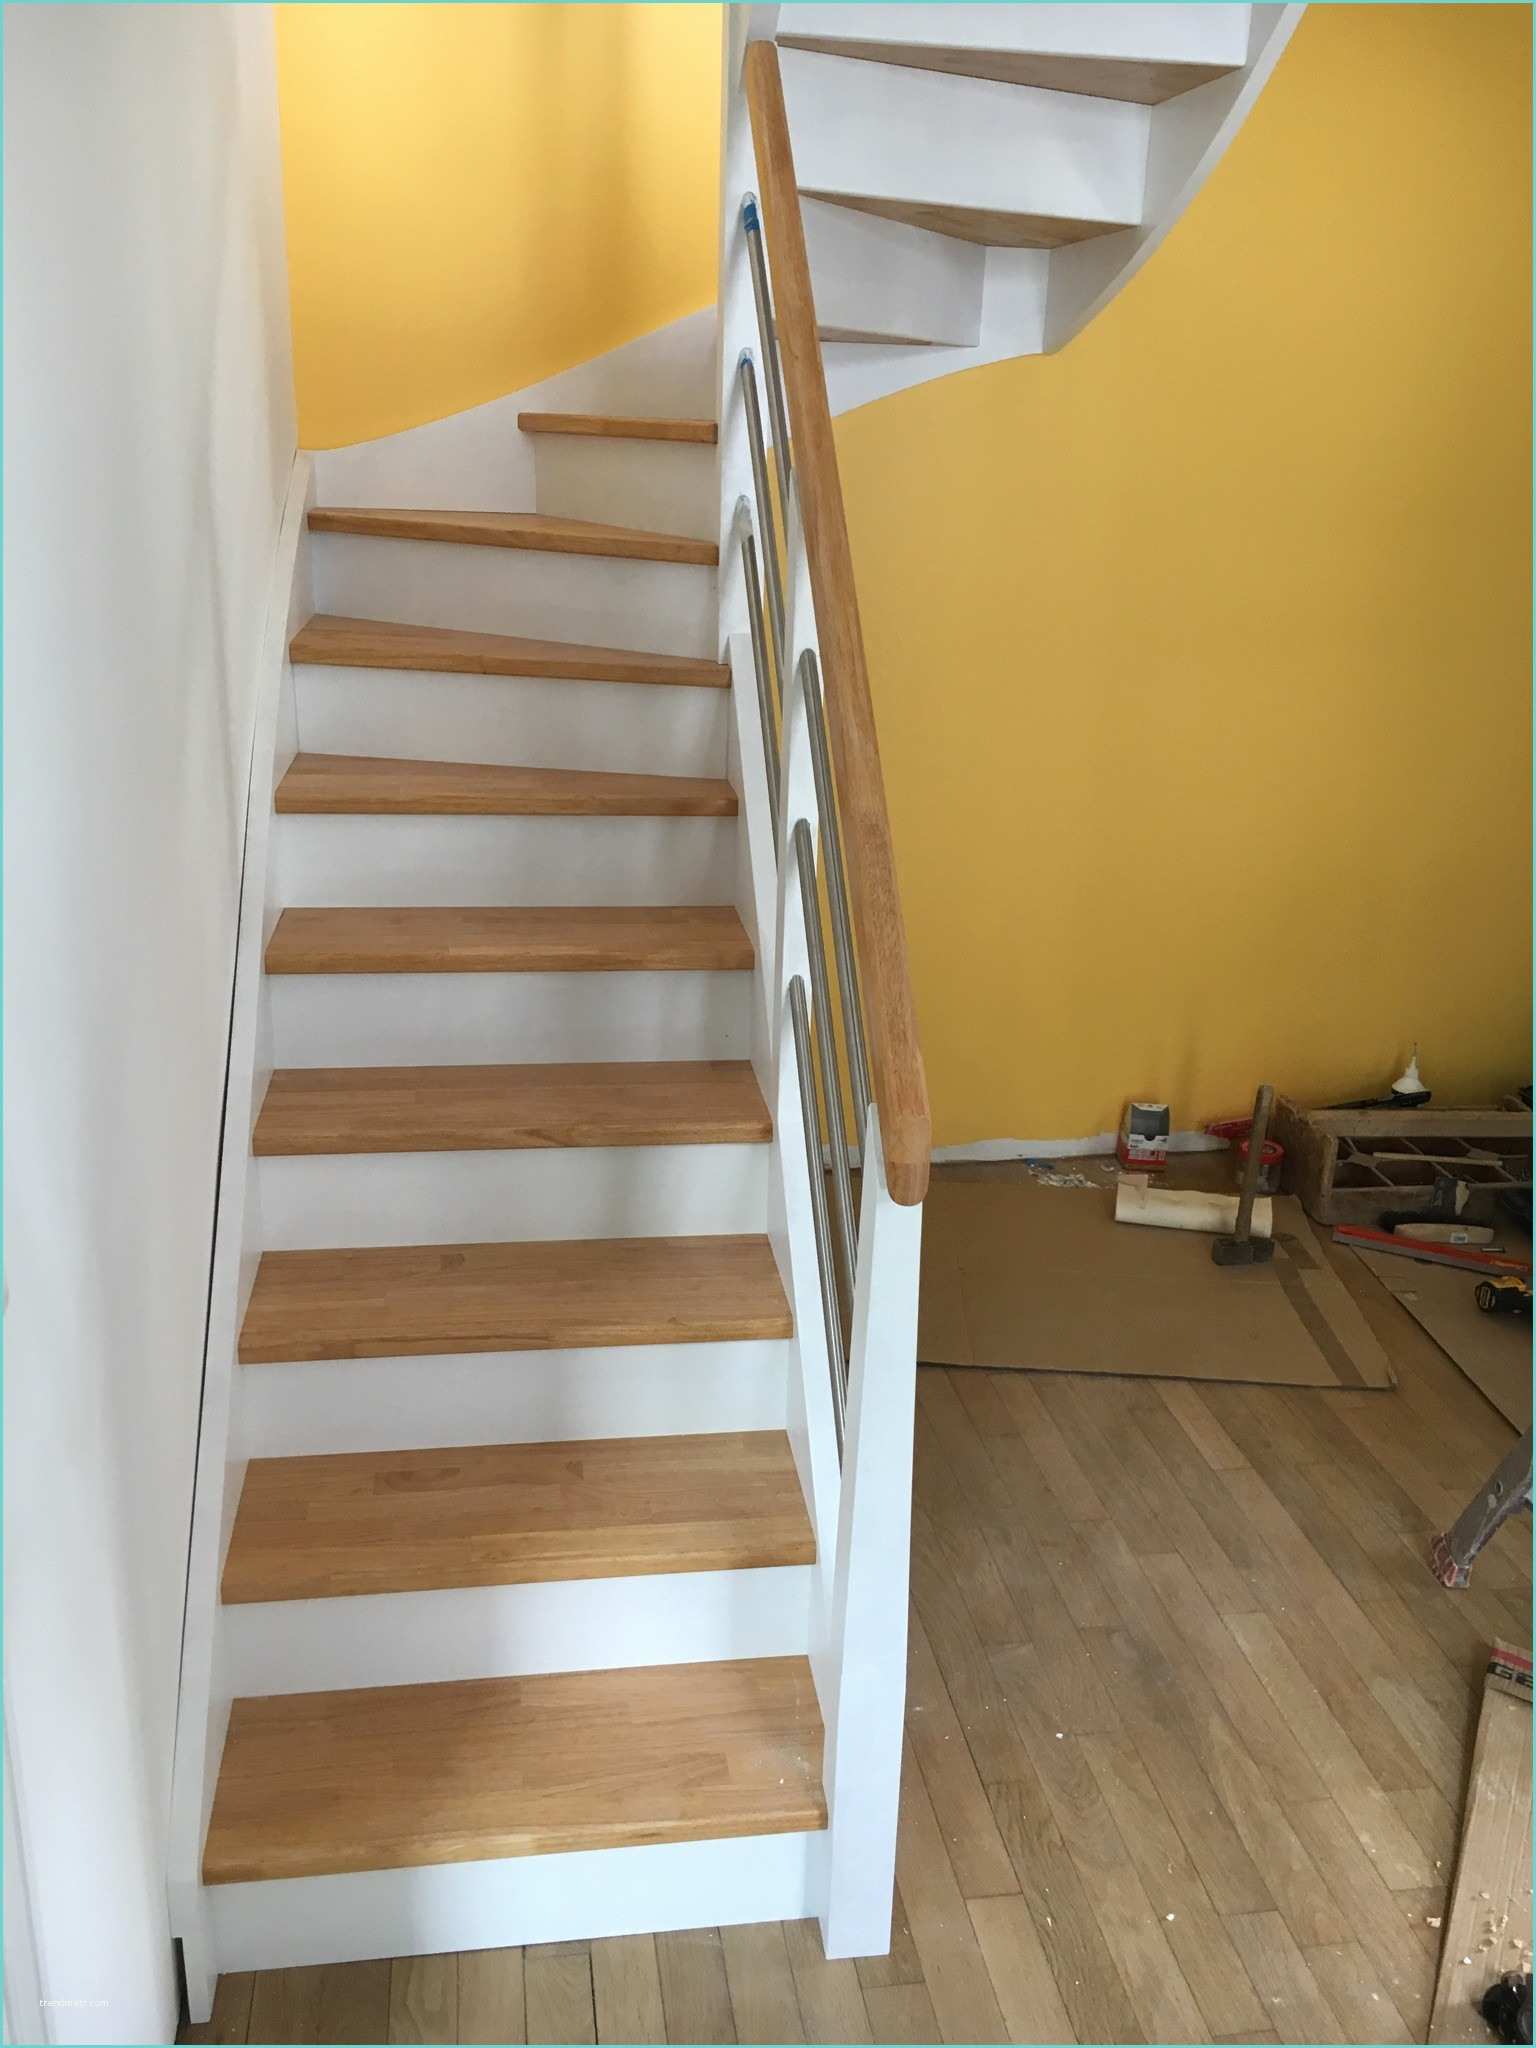 Escalier Repeint En Blanc Ment Repeindre Un Escalier En Bois Vernis – Lsmydesign